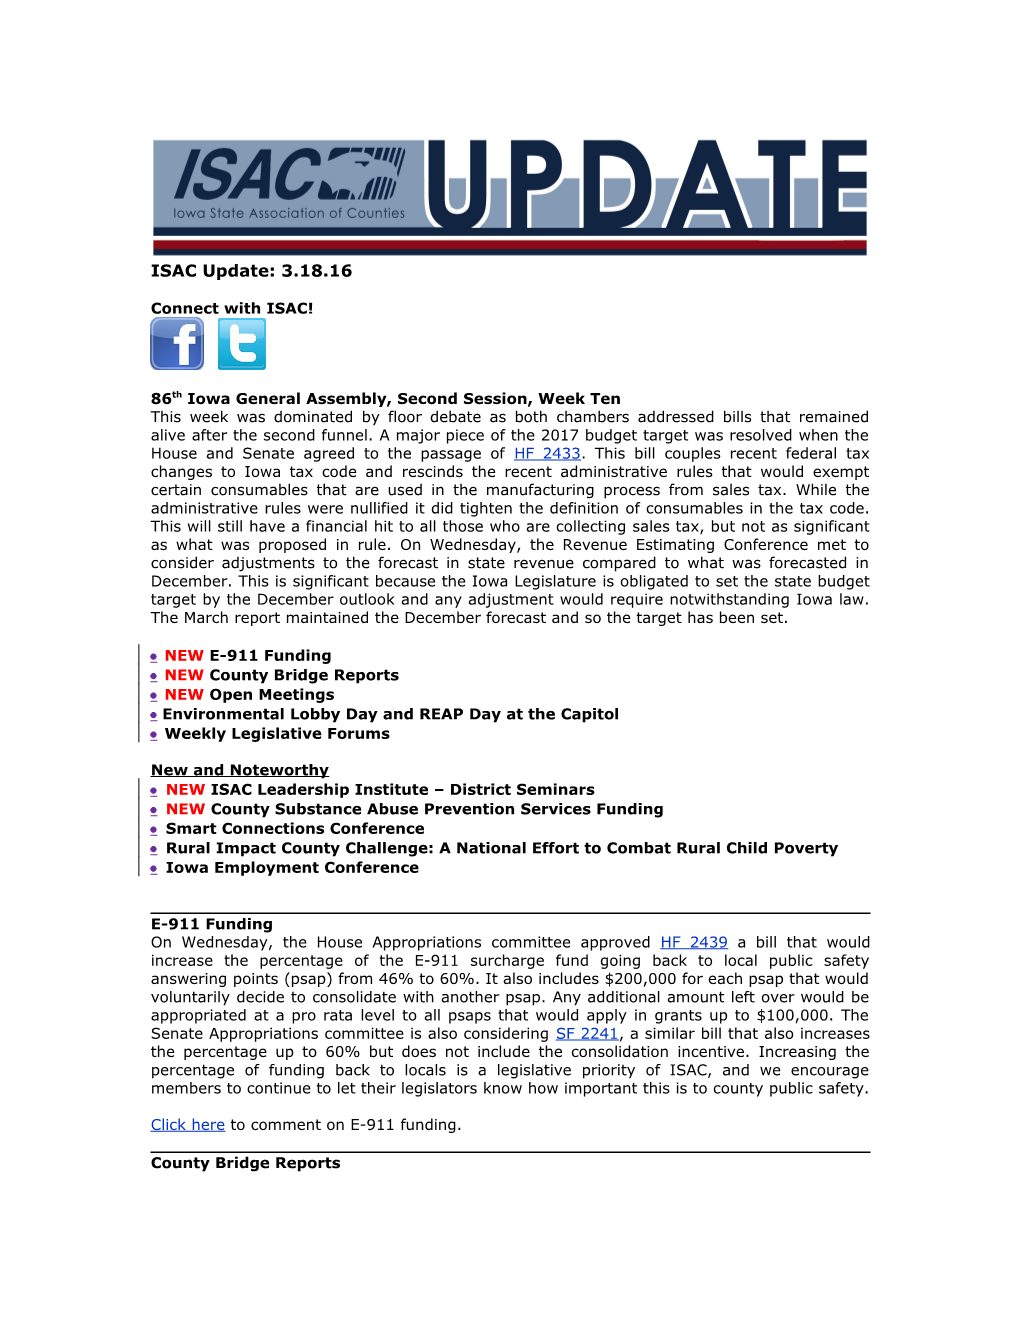 ISAC Legislative Update s4